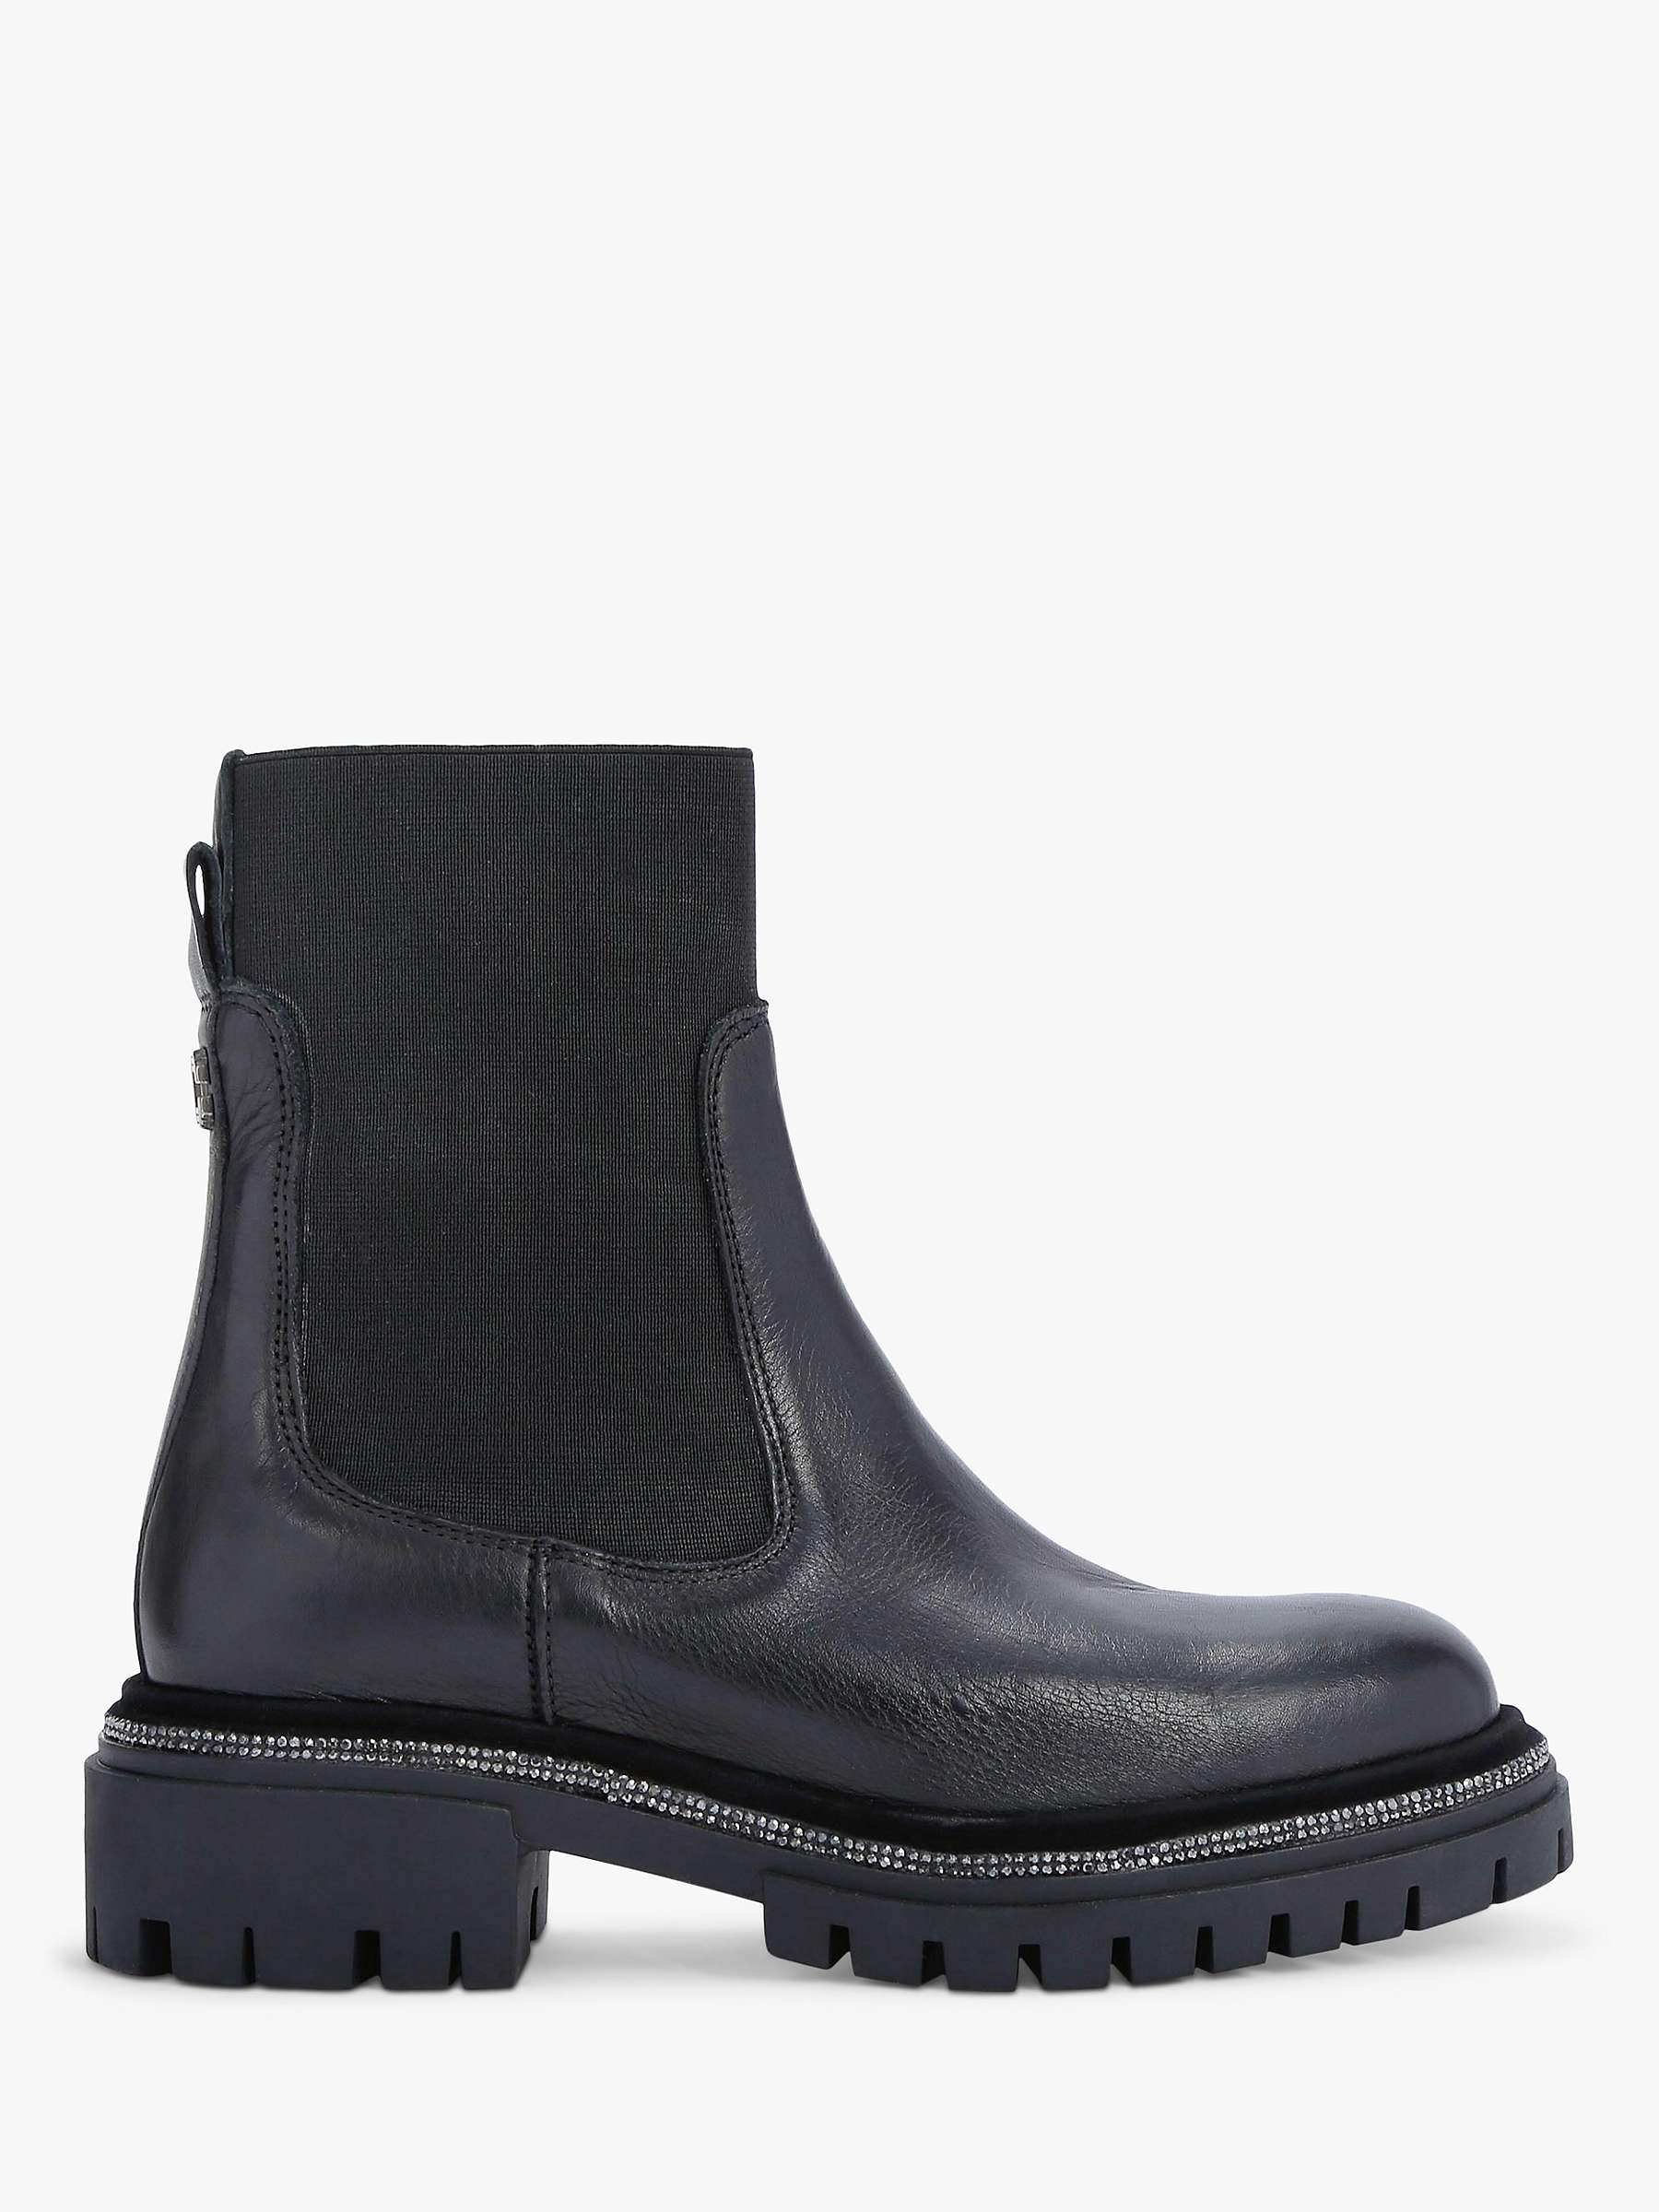 Buy Carvela Dazzle Embellished Sole Leather Chelsea Boots, Black Online at johnlewis.com